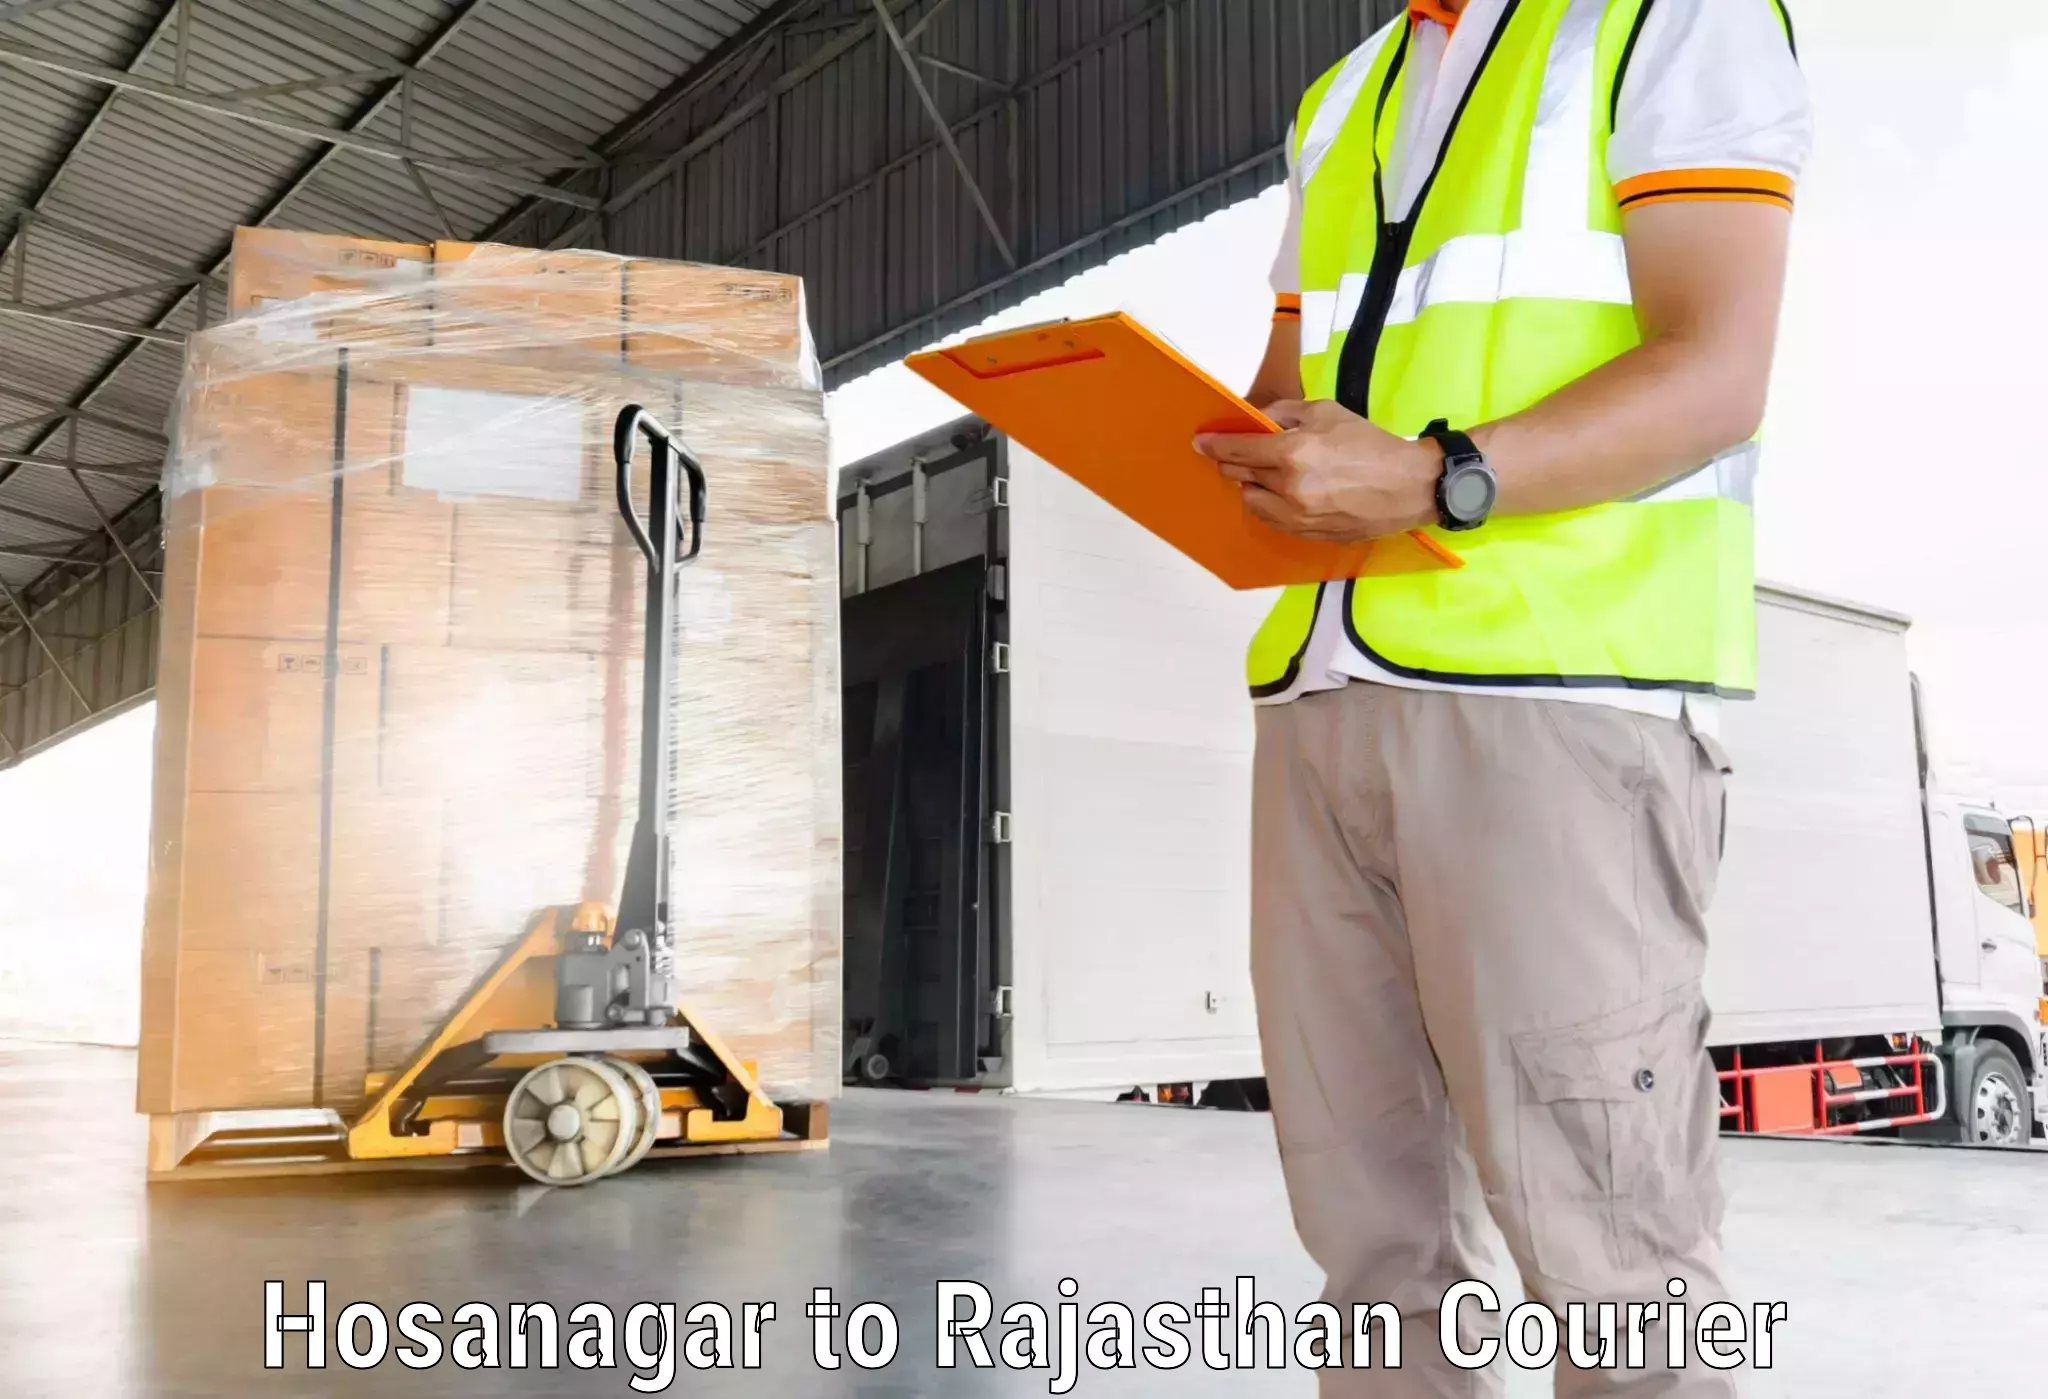 Multi-national courier services Hosanagar to Rajsamand